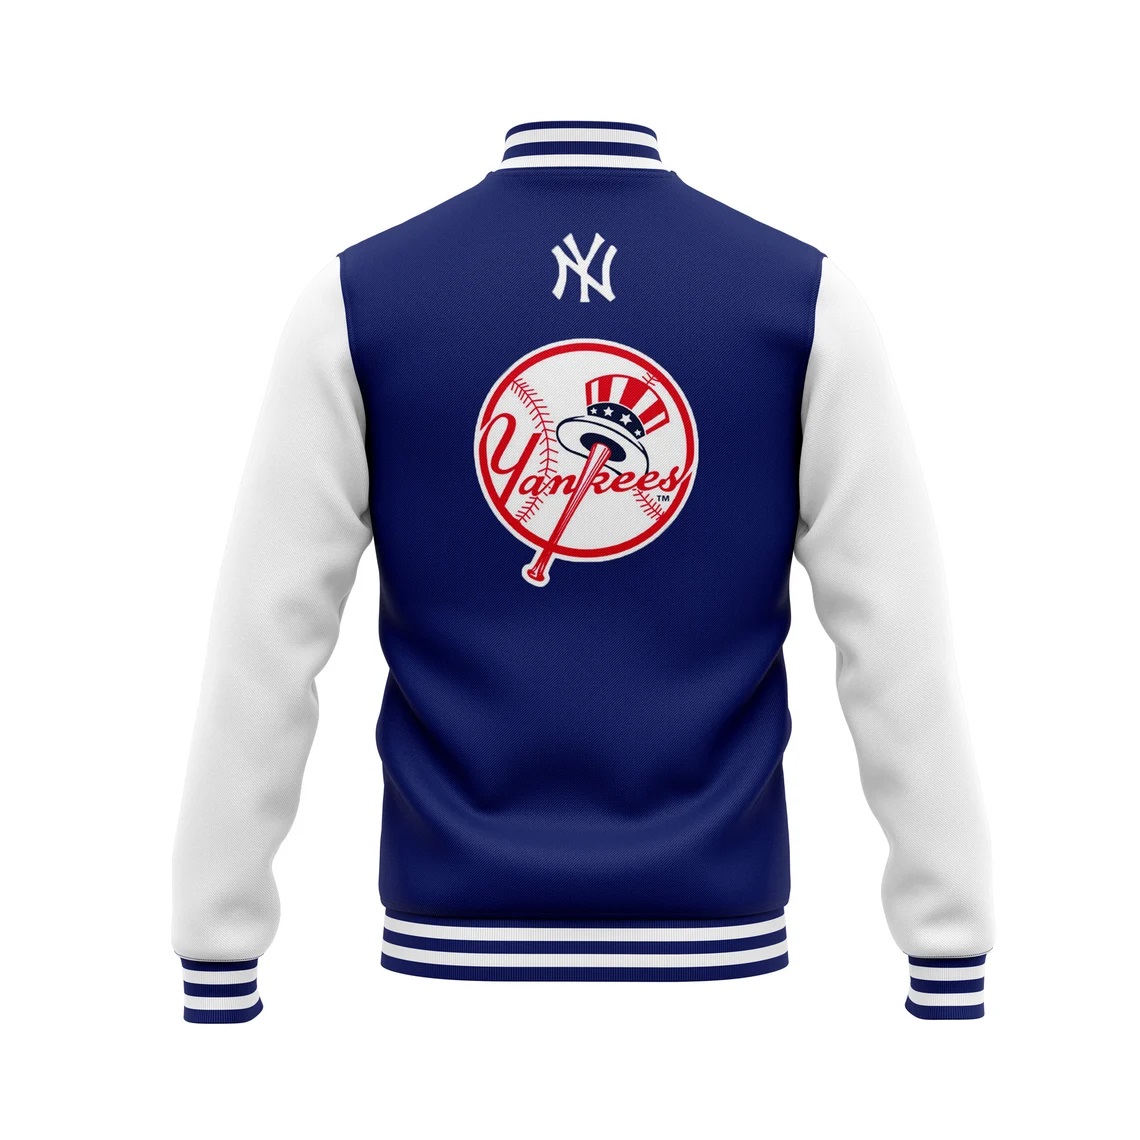 NY Yankees Full Zip Women's Jacket